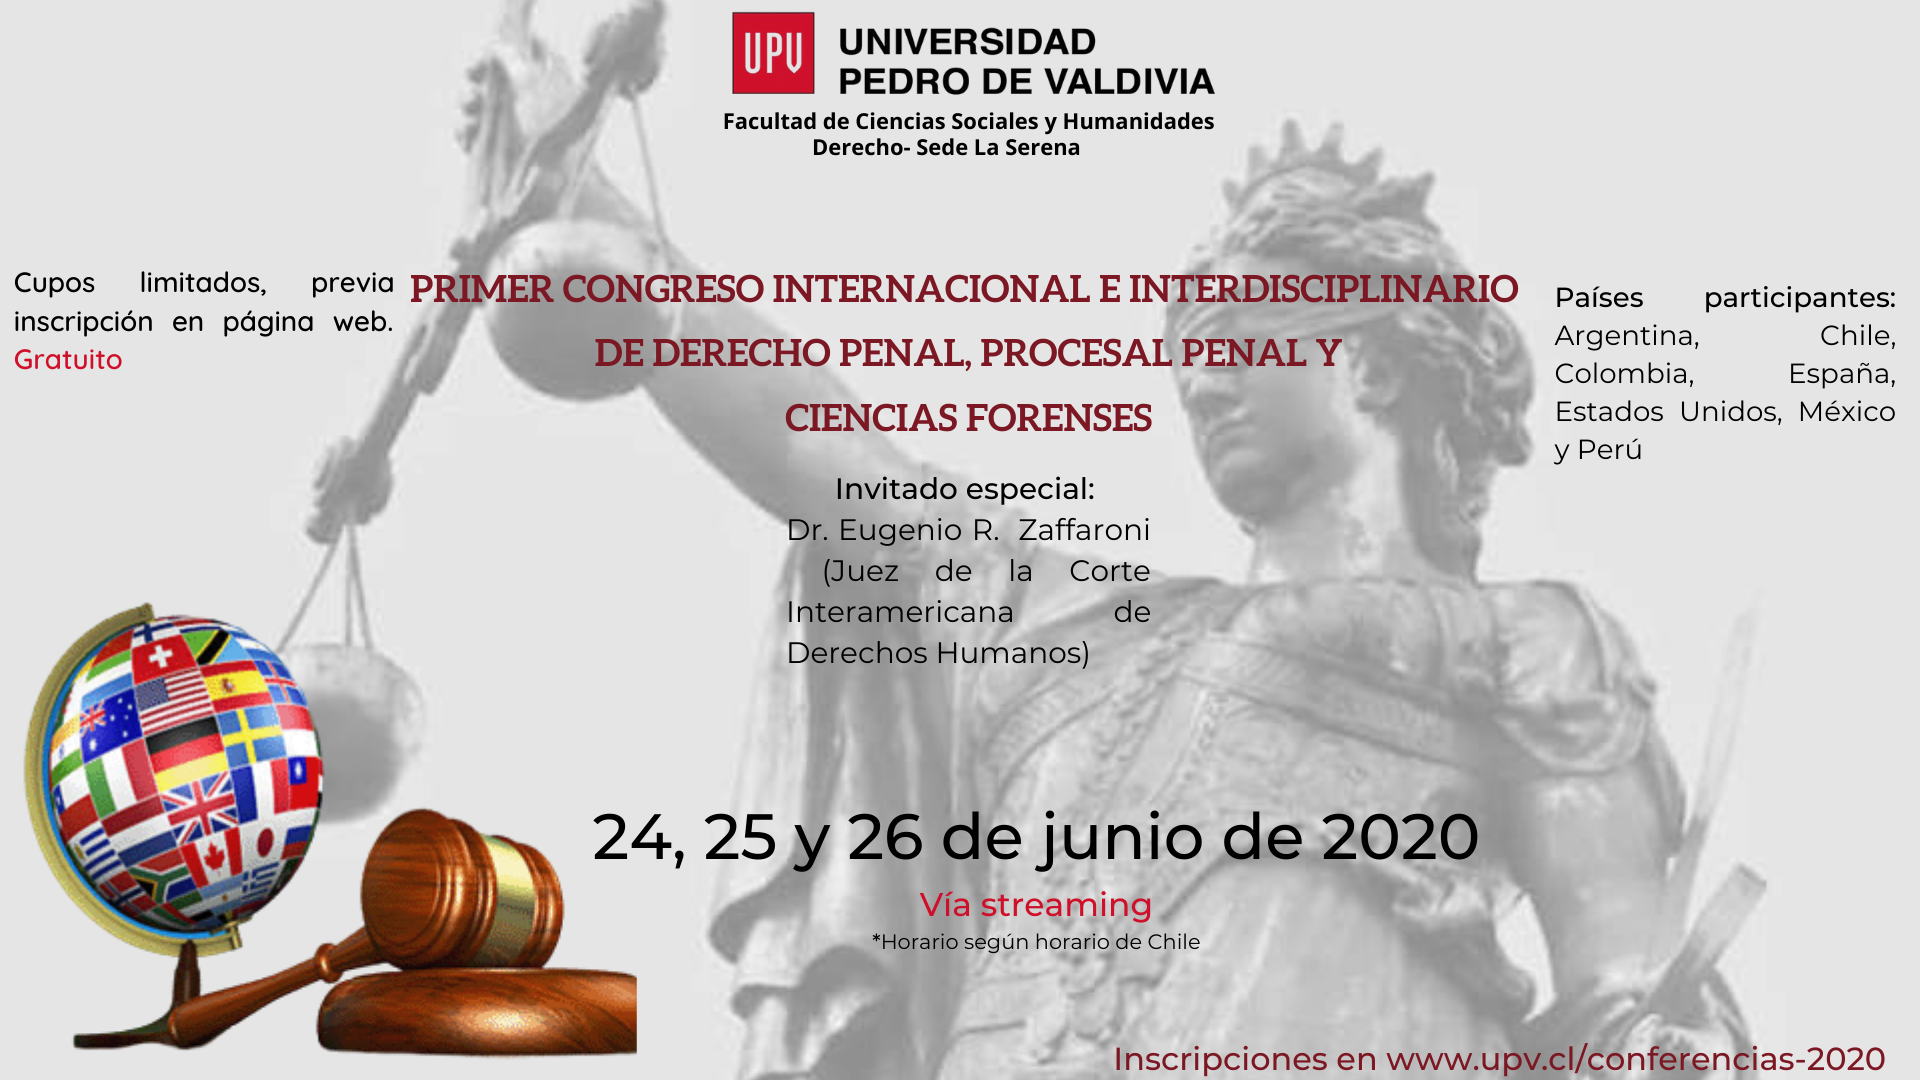 Primer  Congreso Internacional Multidisciplinario de Derecho Penal, Procesal Penal y Ciencias Forenses, a realizarse los días 24, 25 y 26 de junio de 2020